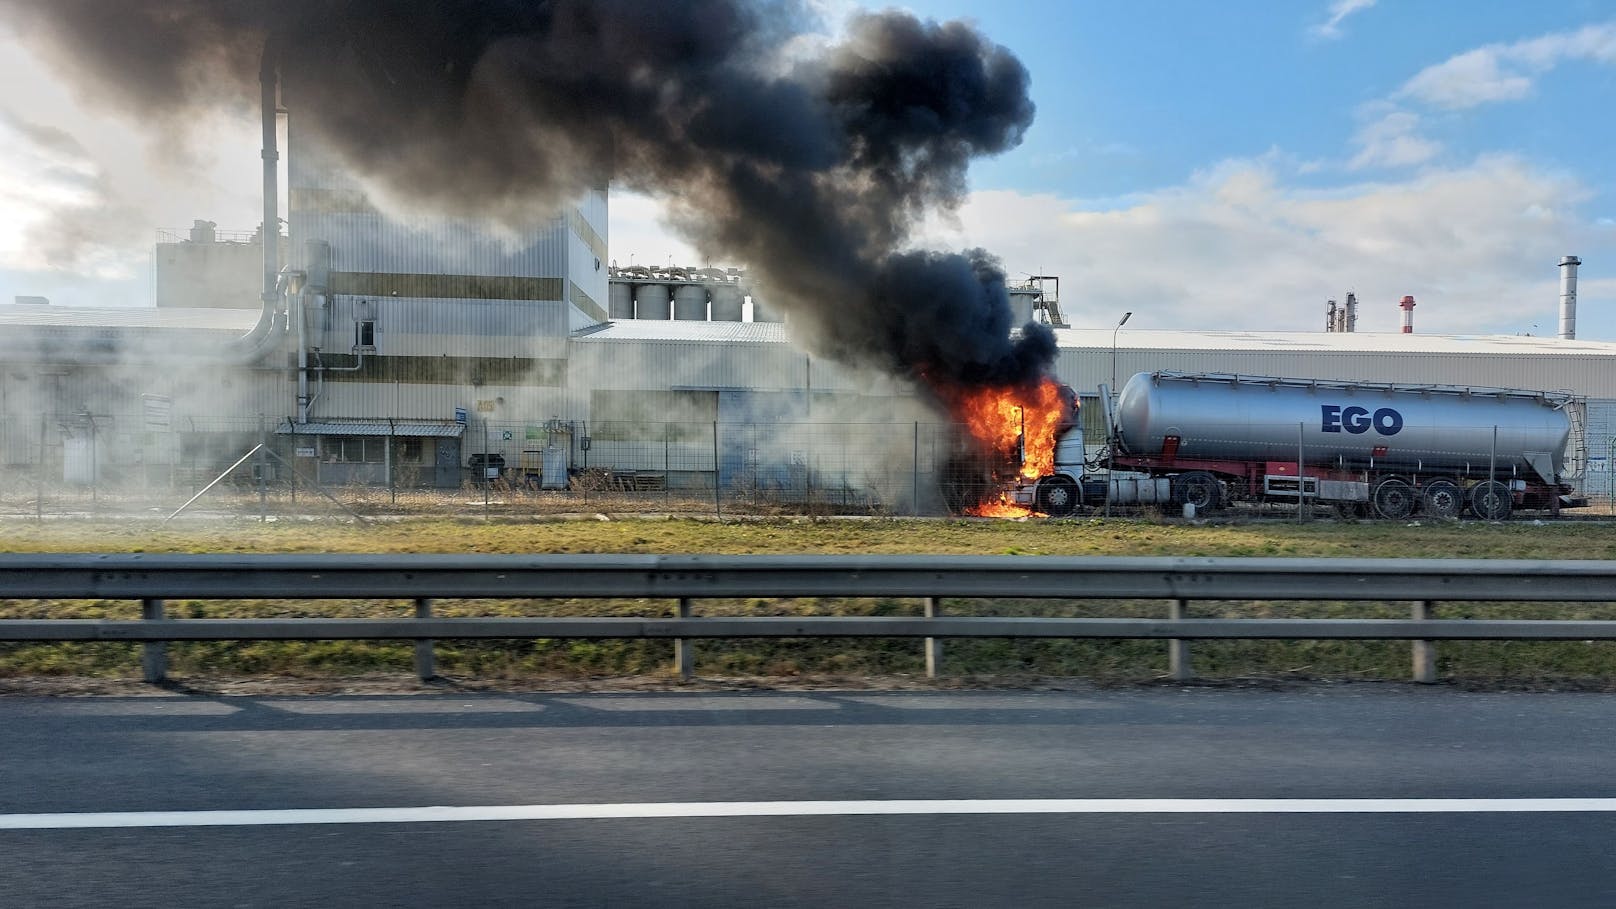 Rauchsäule über Wien nach Lkw-Brand bei Raffinerie